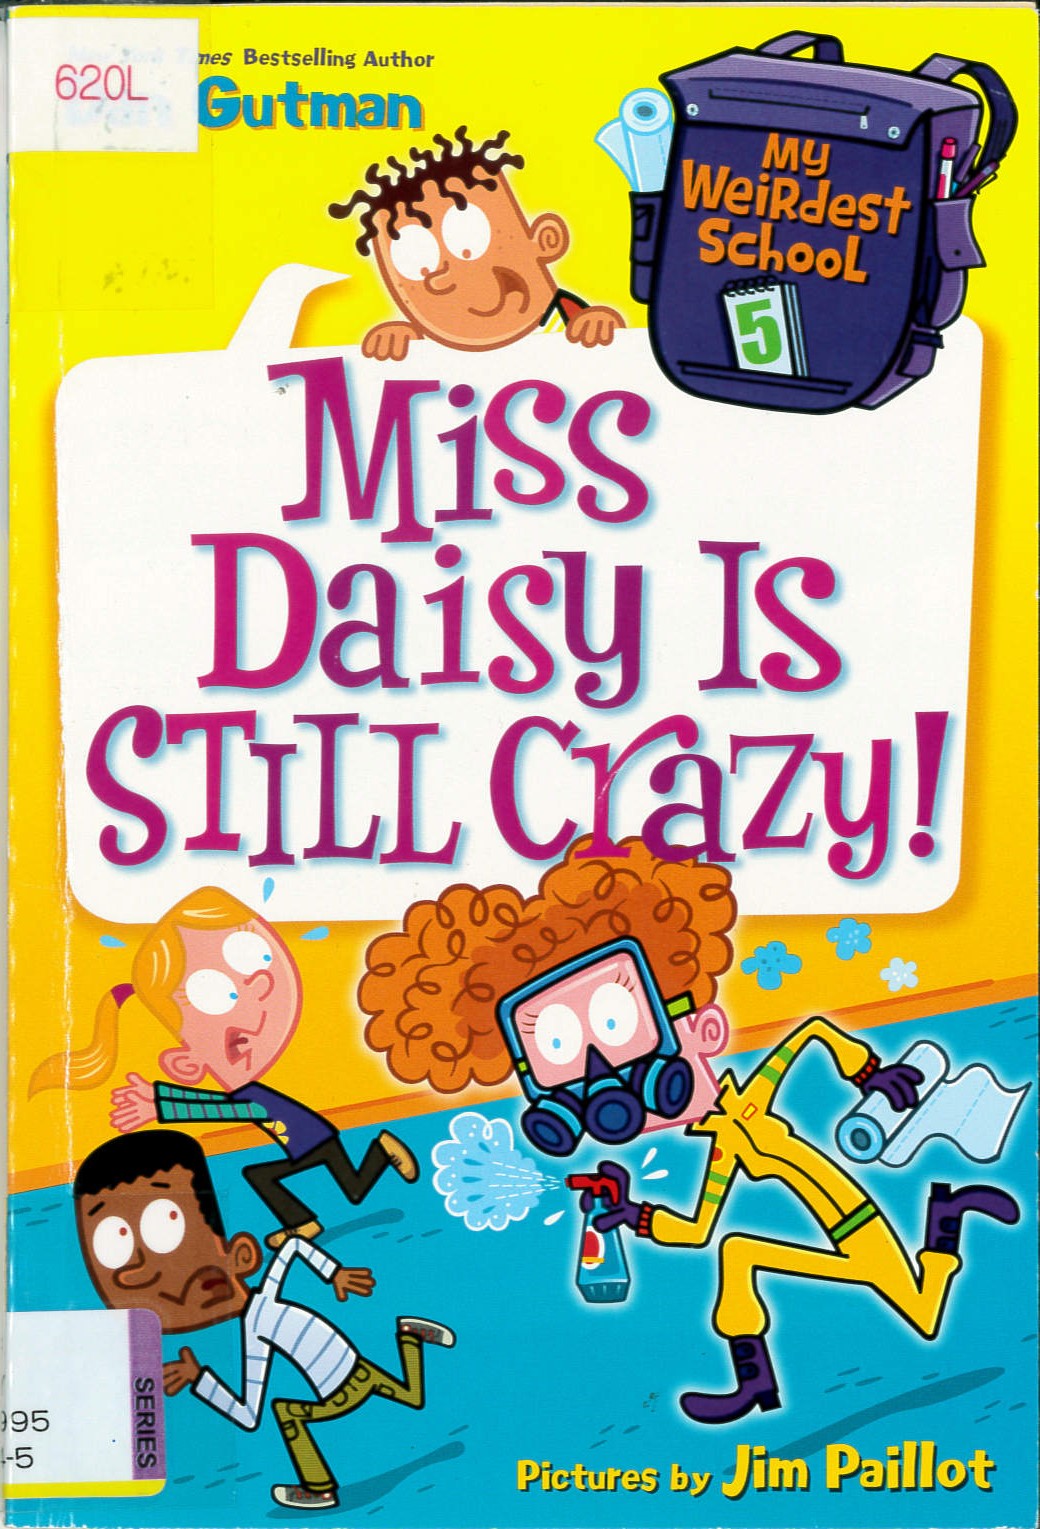 Miss Daisy is still crazy! /